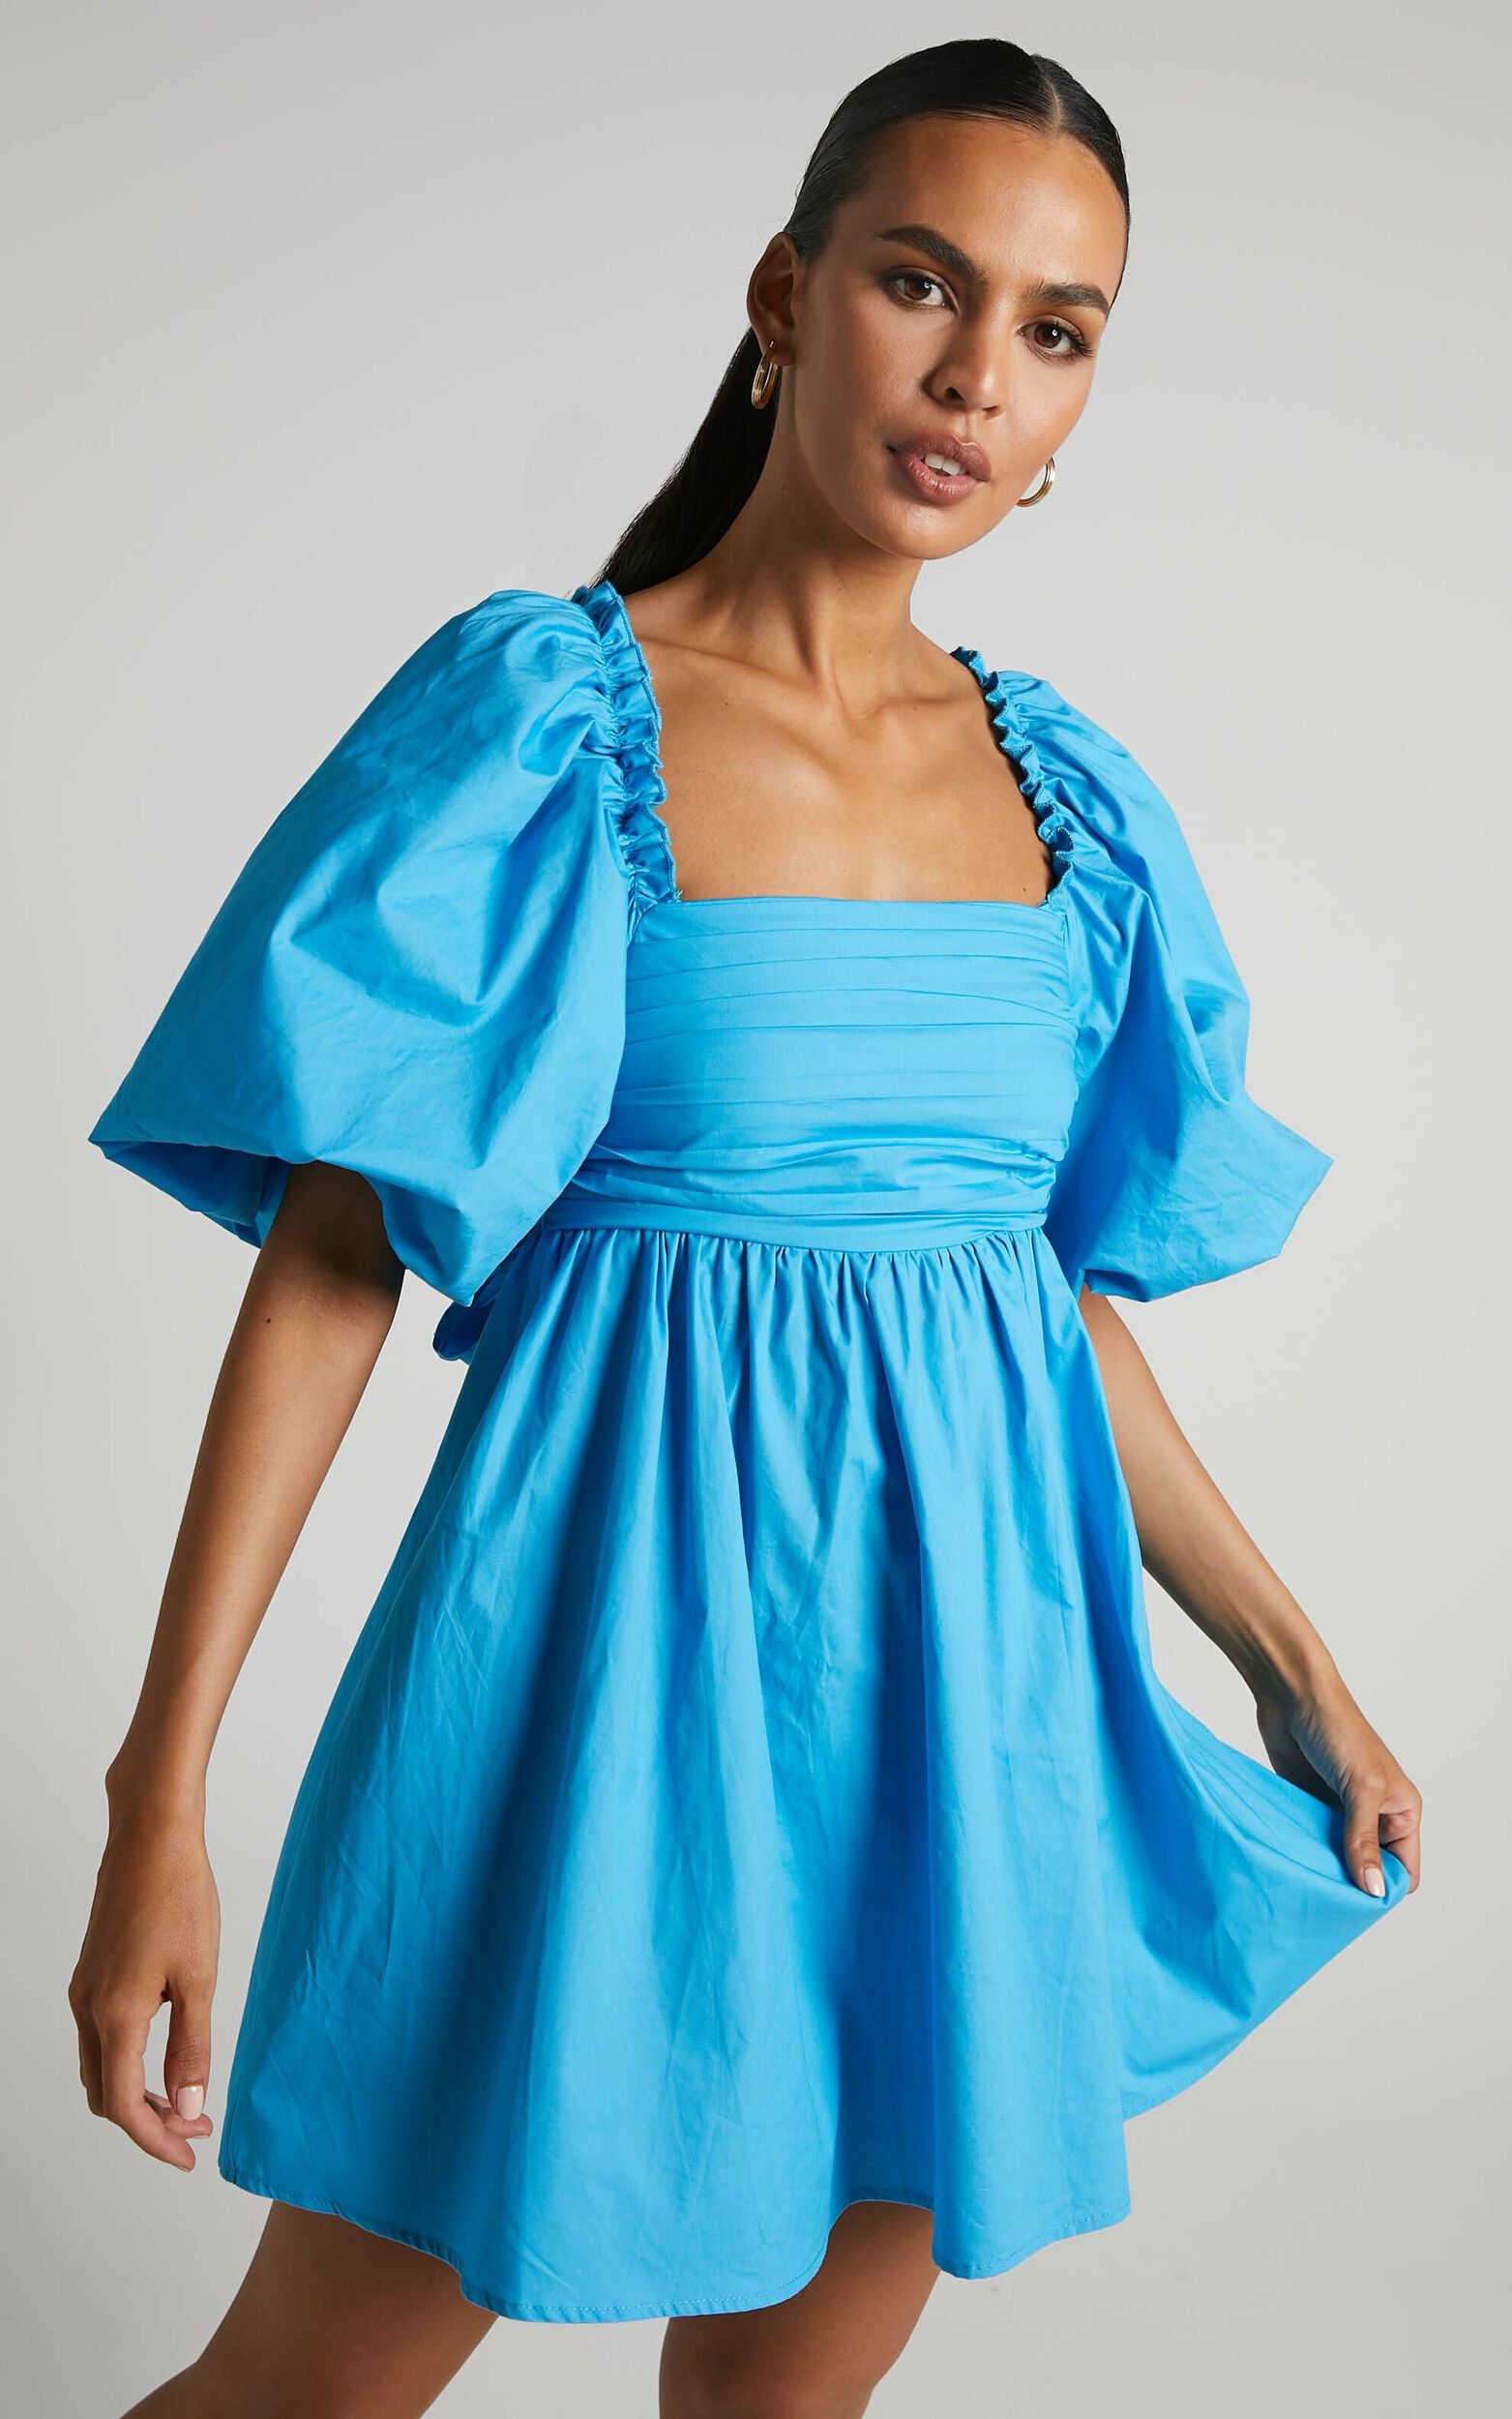 Melony Mini Dress - Cotton Poplin Puff Sleeve Dress in Blue - 06, BLU1